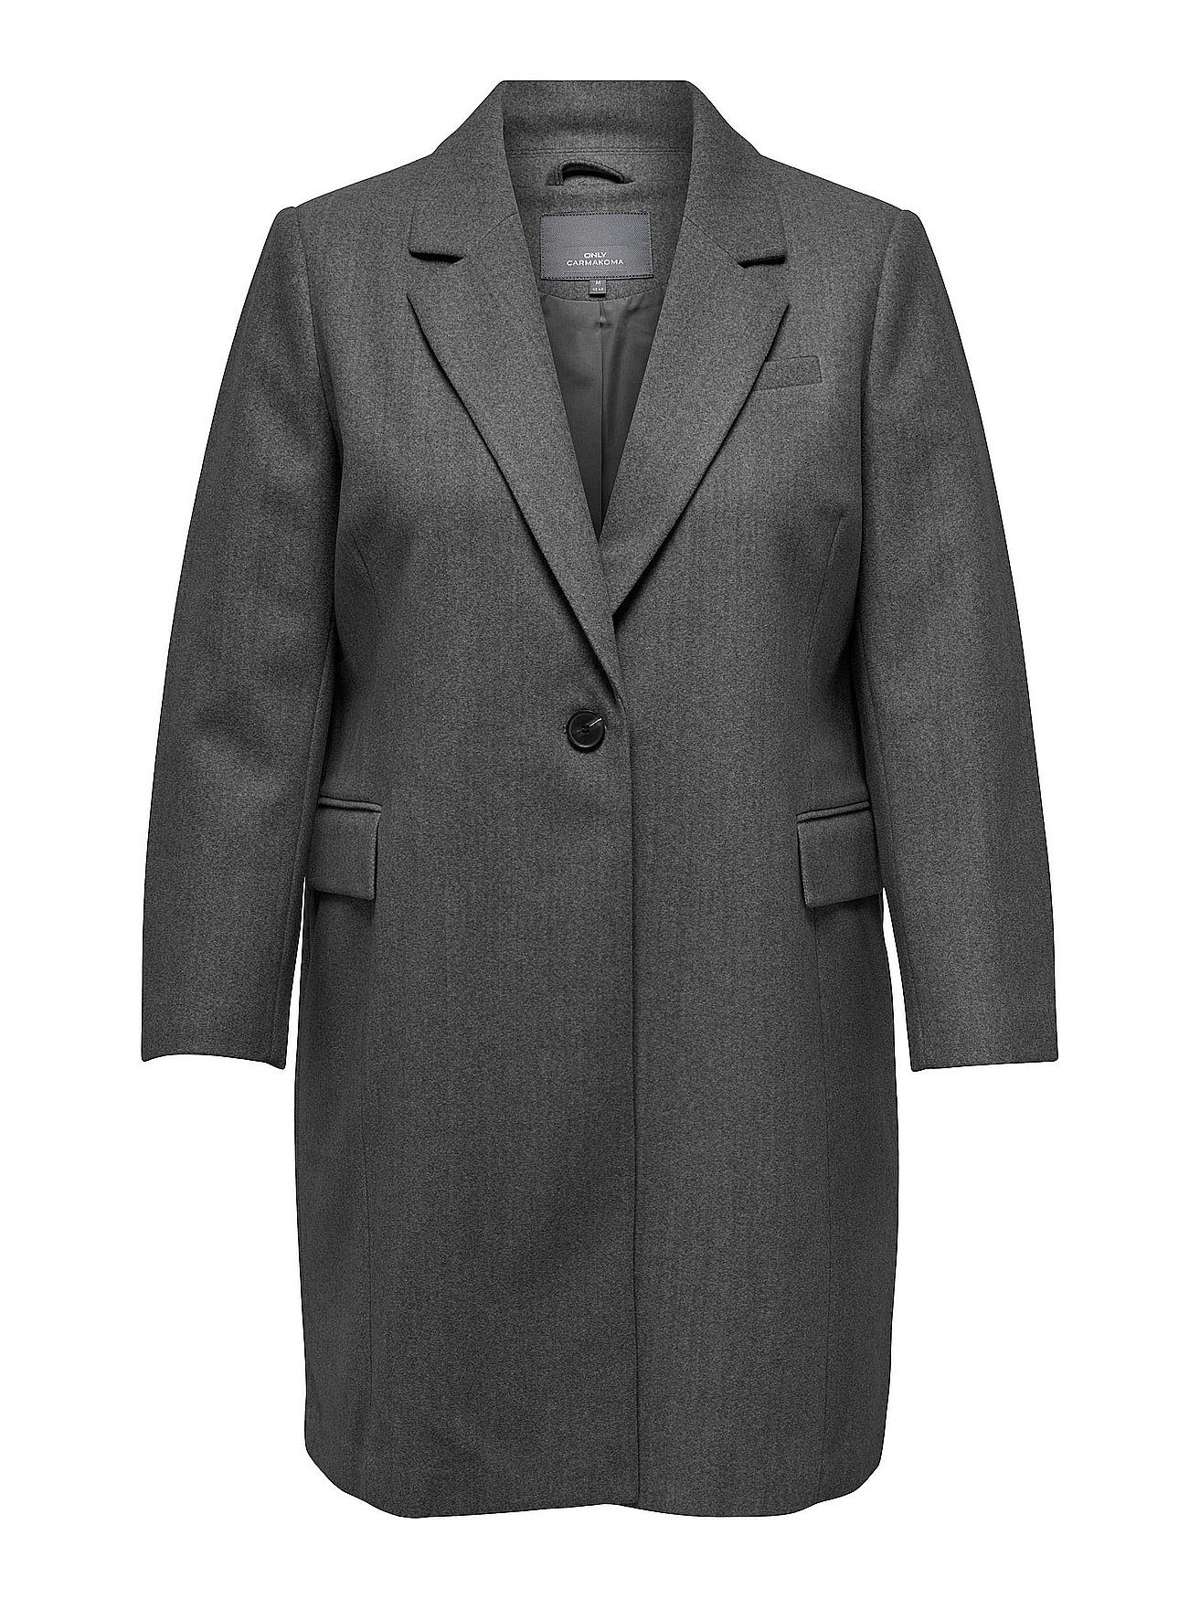 Короткое зимнее пальто-переходник больших размеров CARNANCY 5741 темно-серого цвета